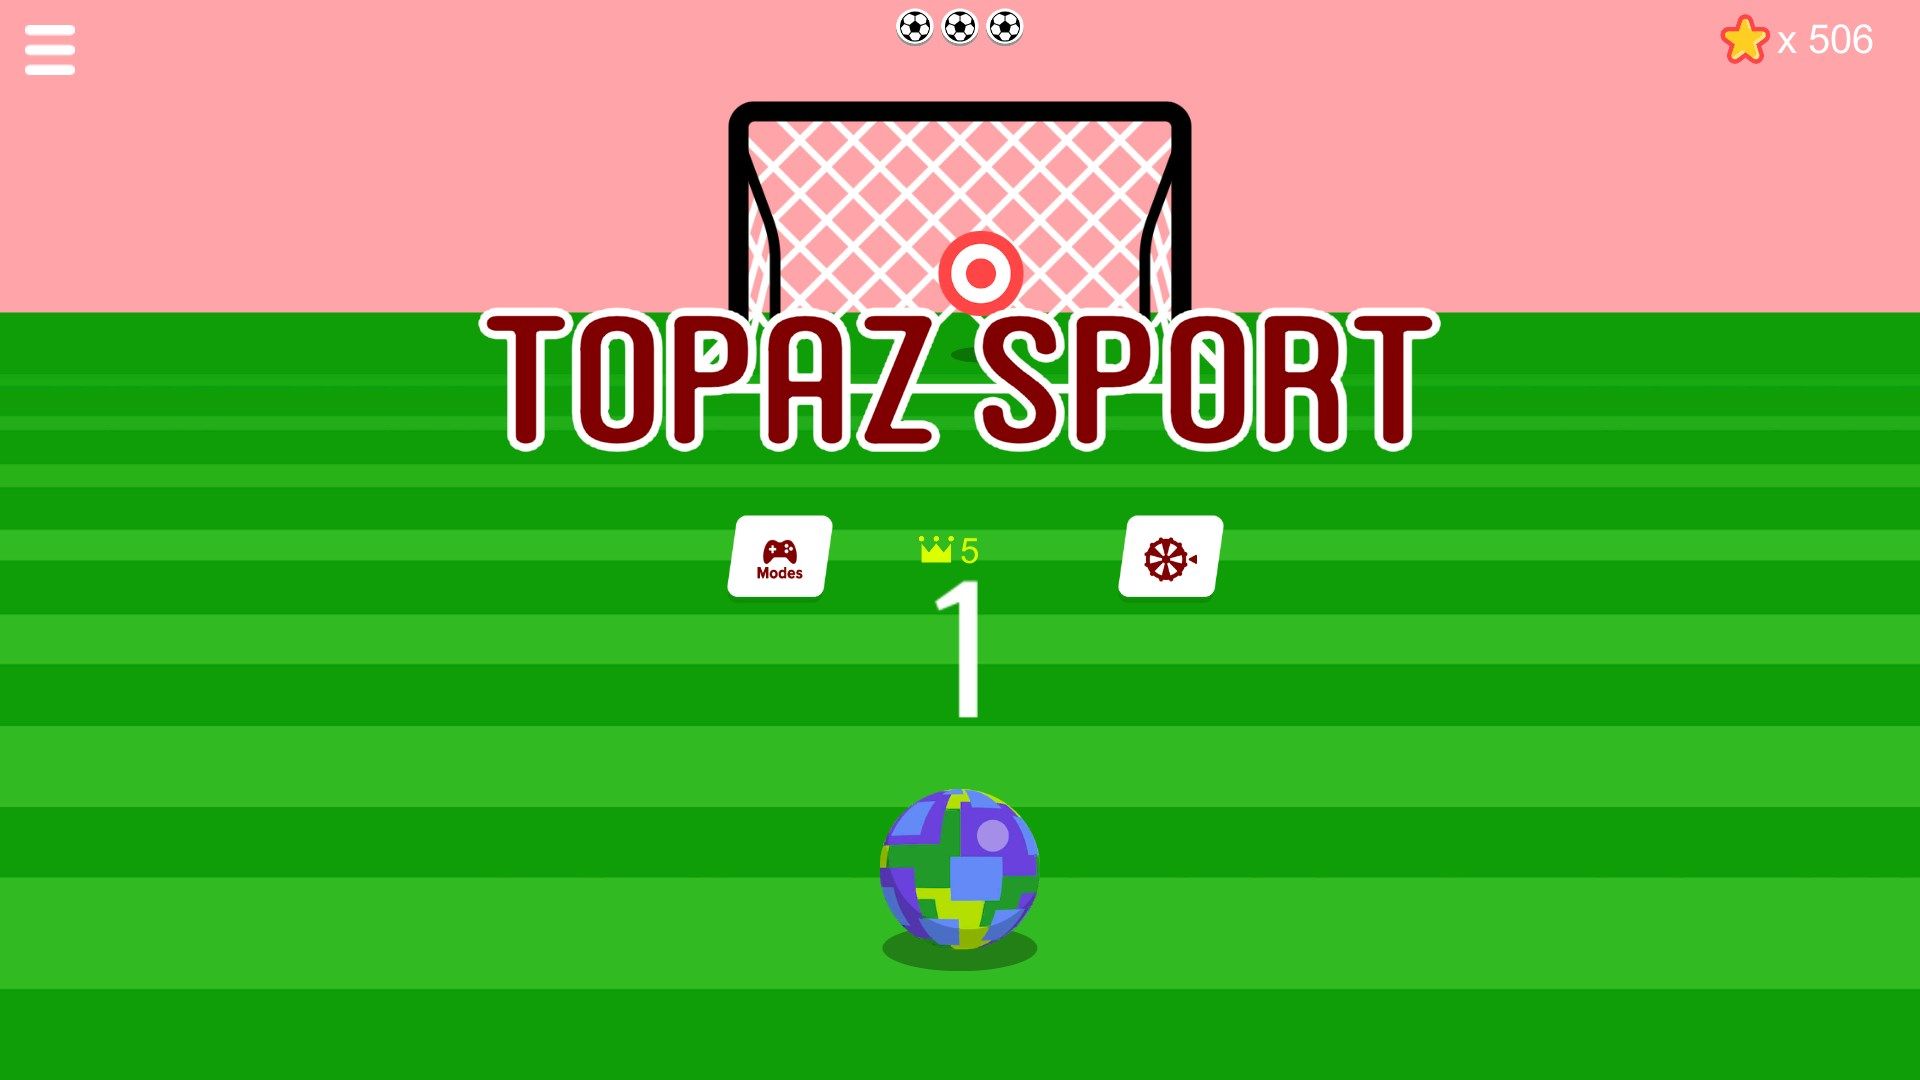 Topaz Sport